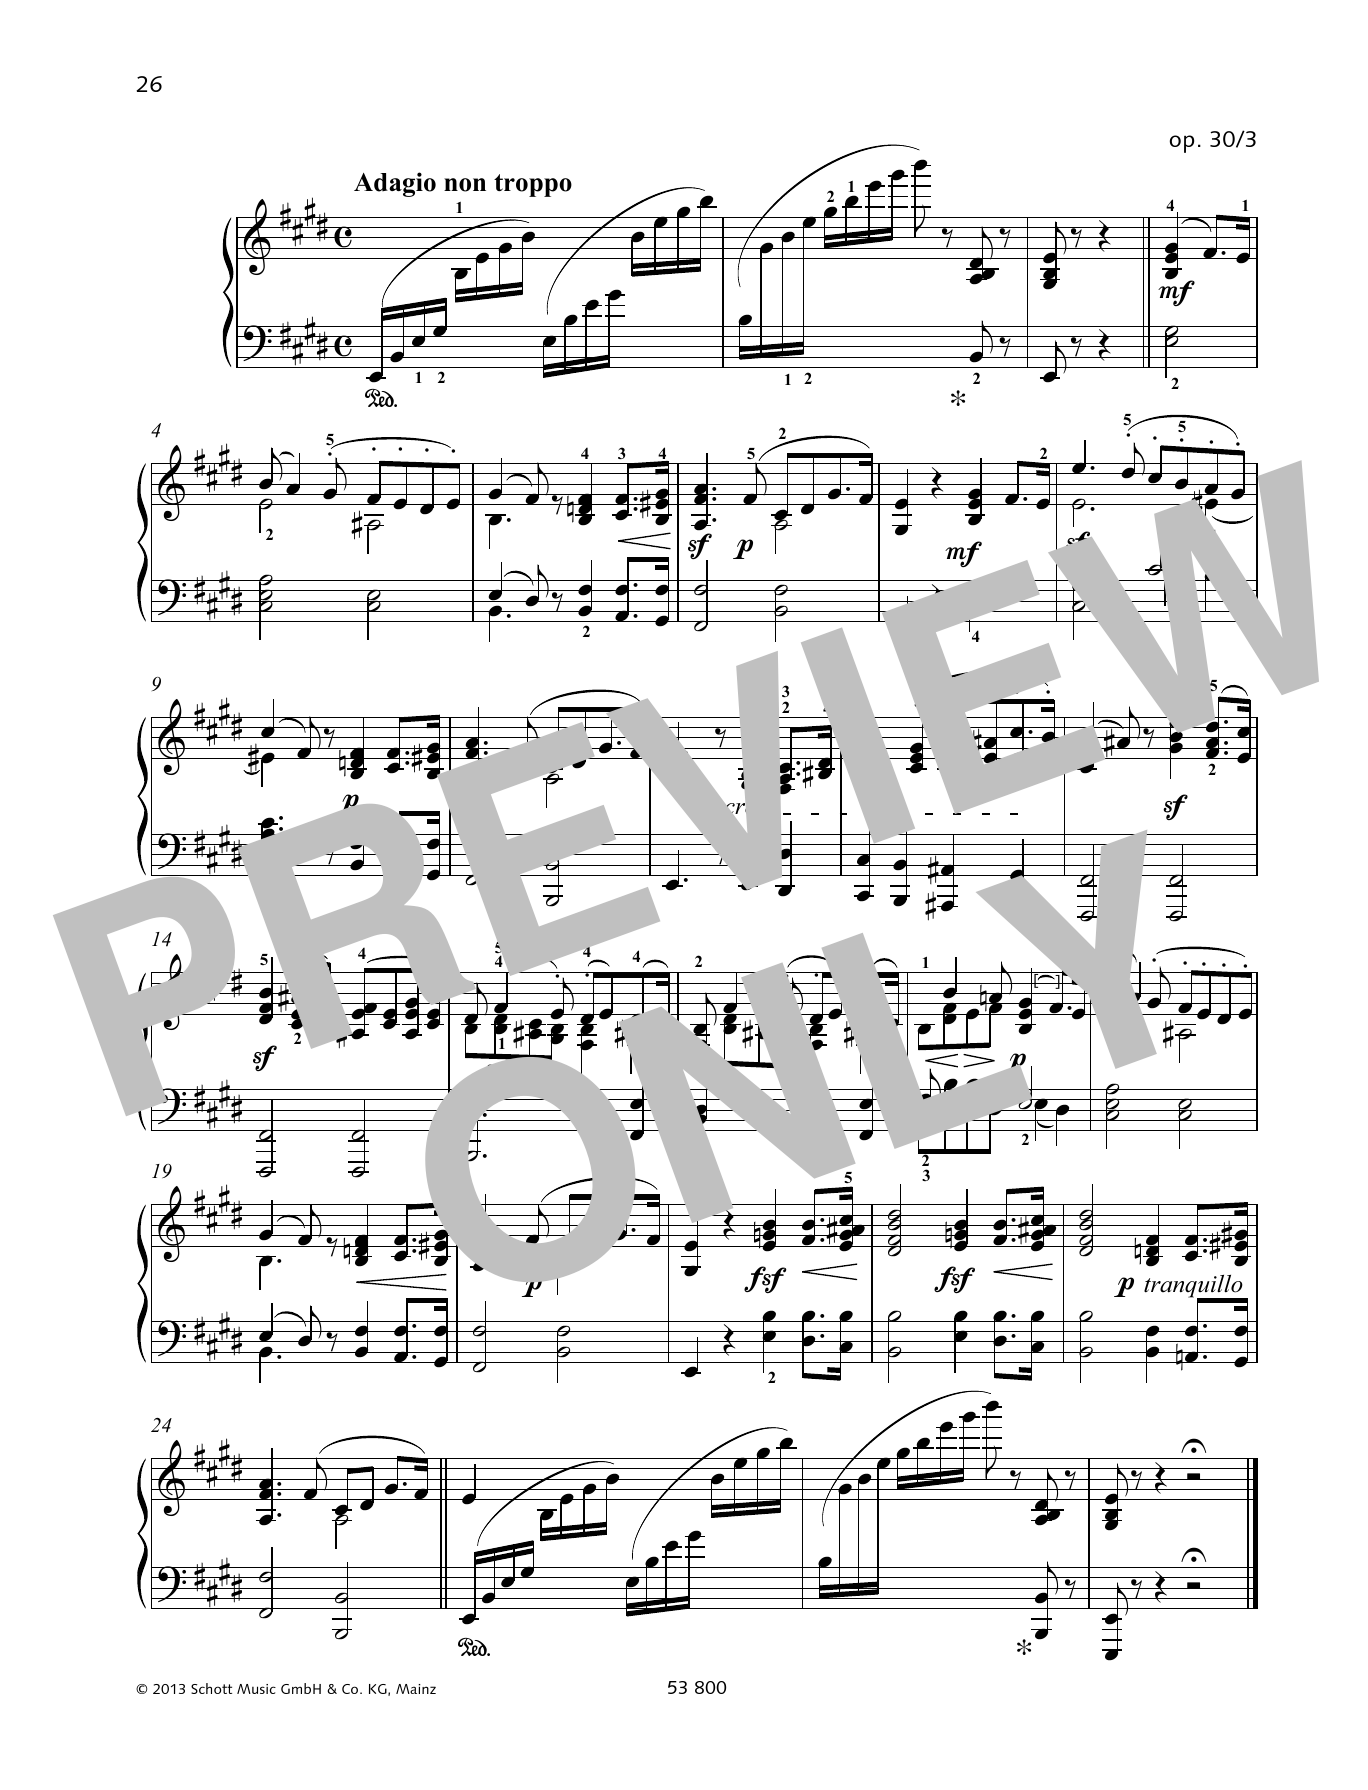 Download Felix Mendelssohn Bartholdy Adagio non troppo Sheet Music